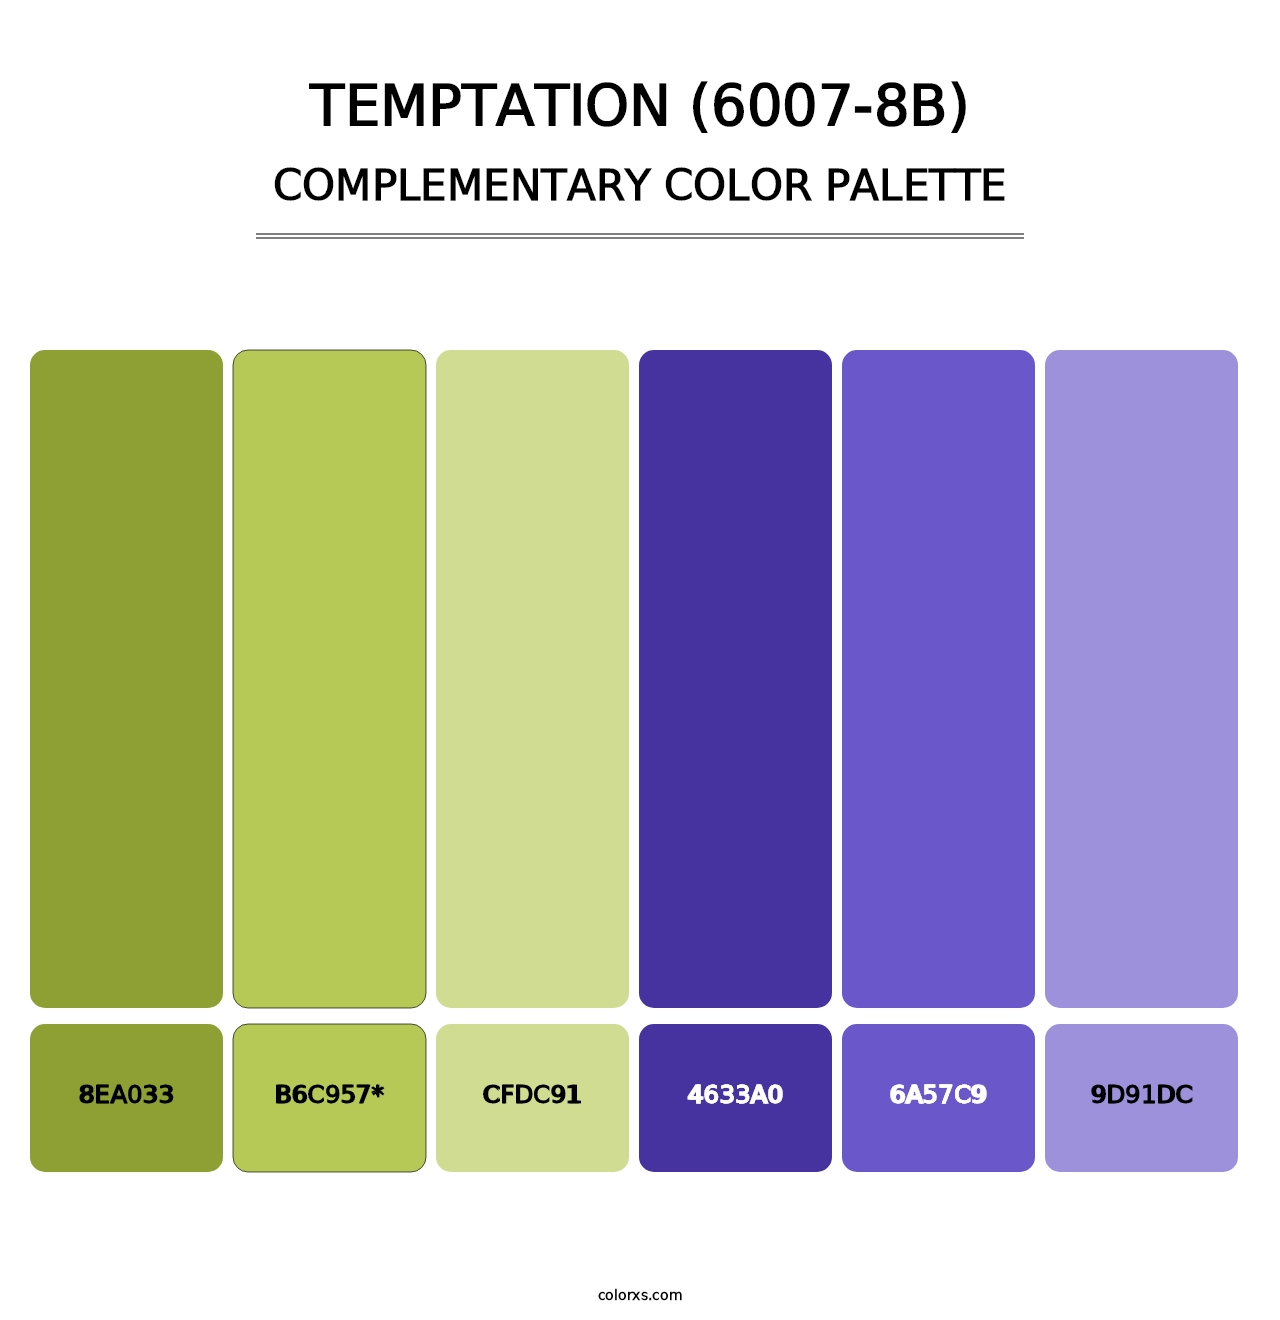 Temptation (6007-8B) - Complementary Color Palette